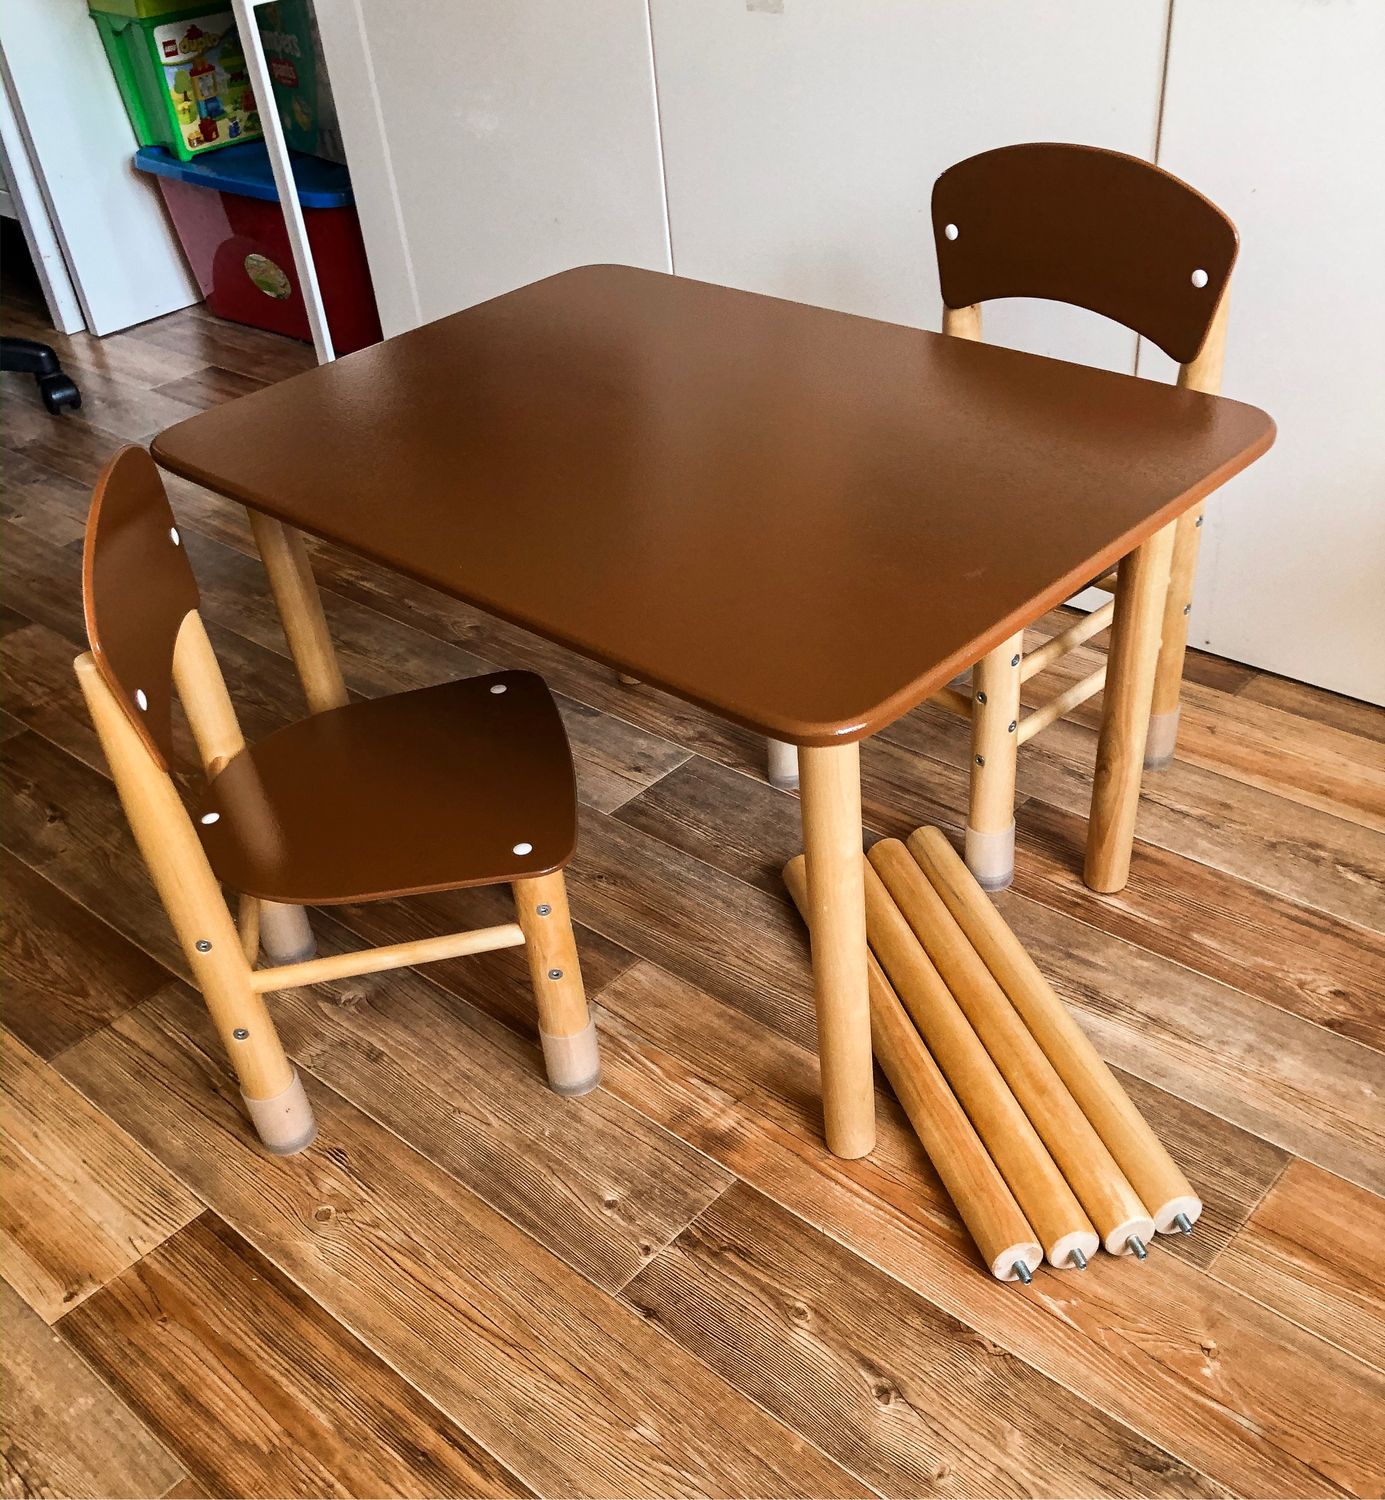 стол для детей с двумя стульями